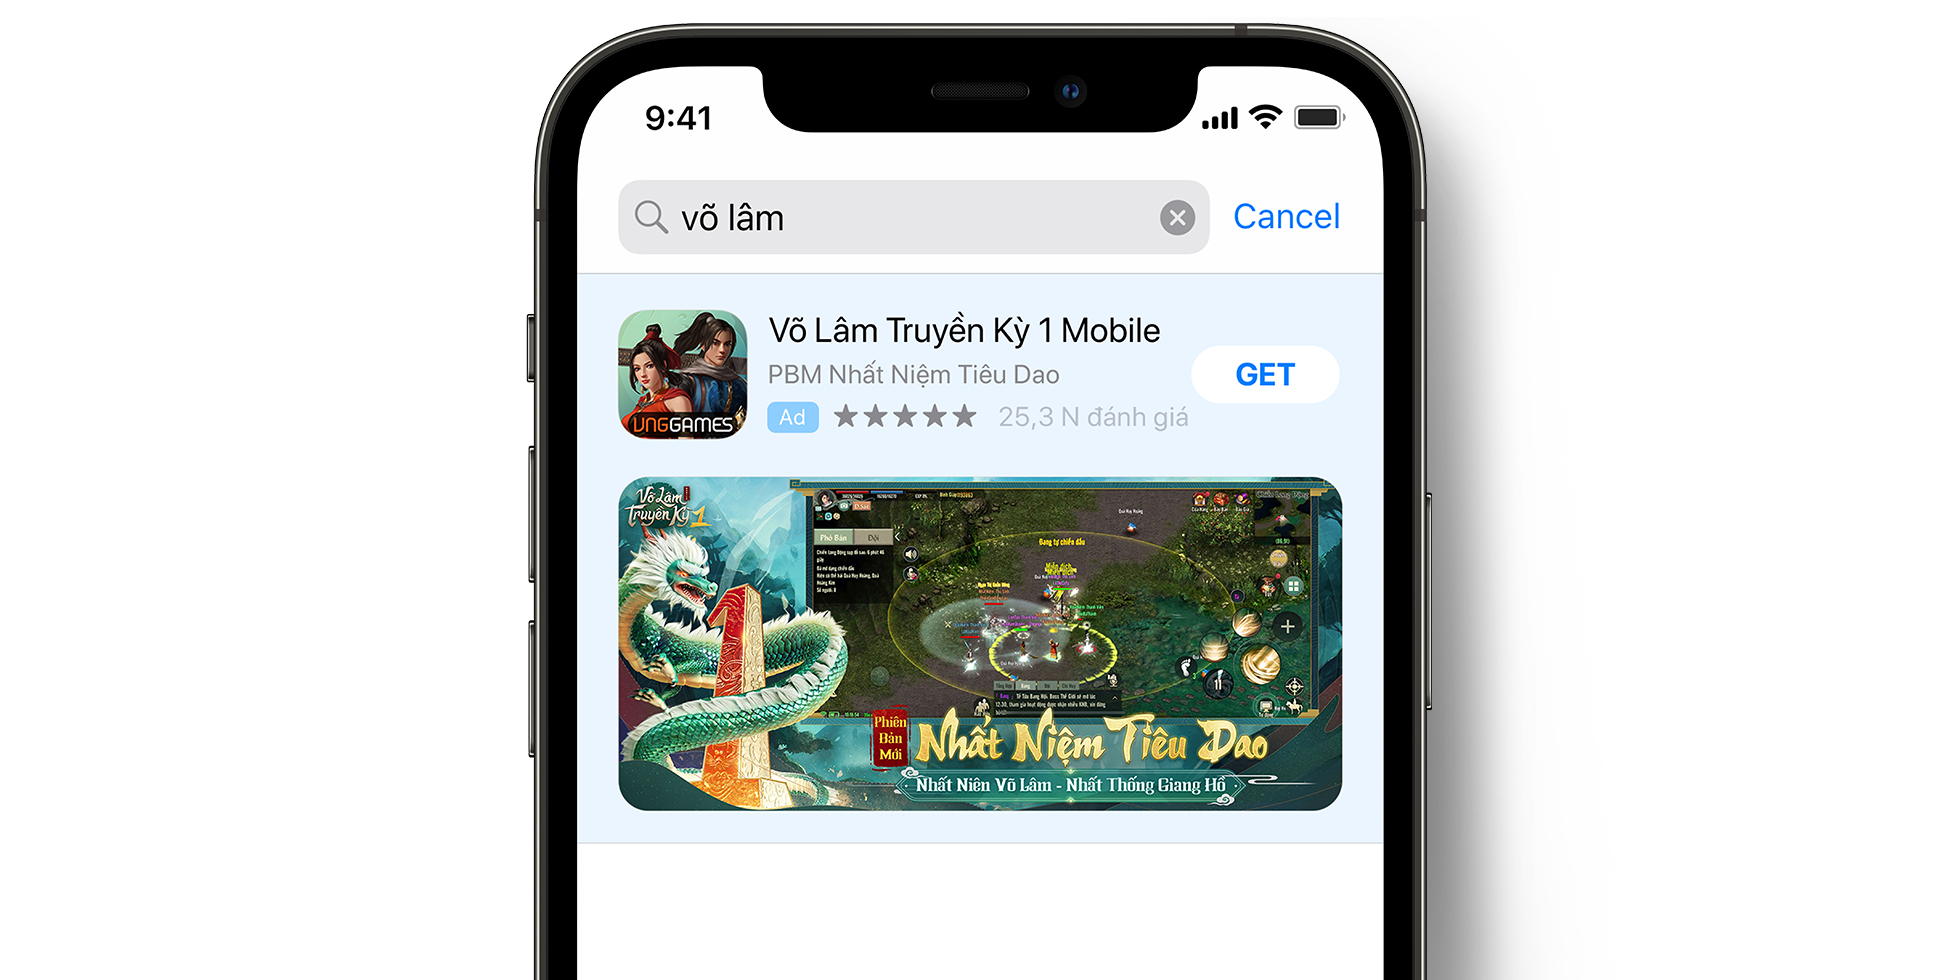 App Store의 VLTK 1 Mobile 광고